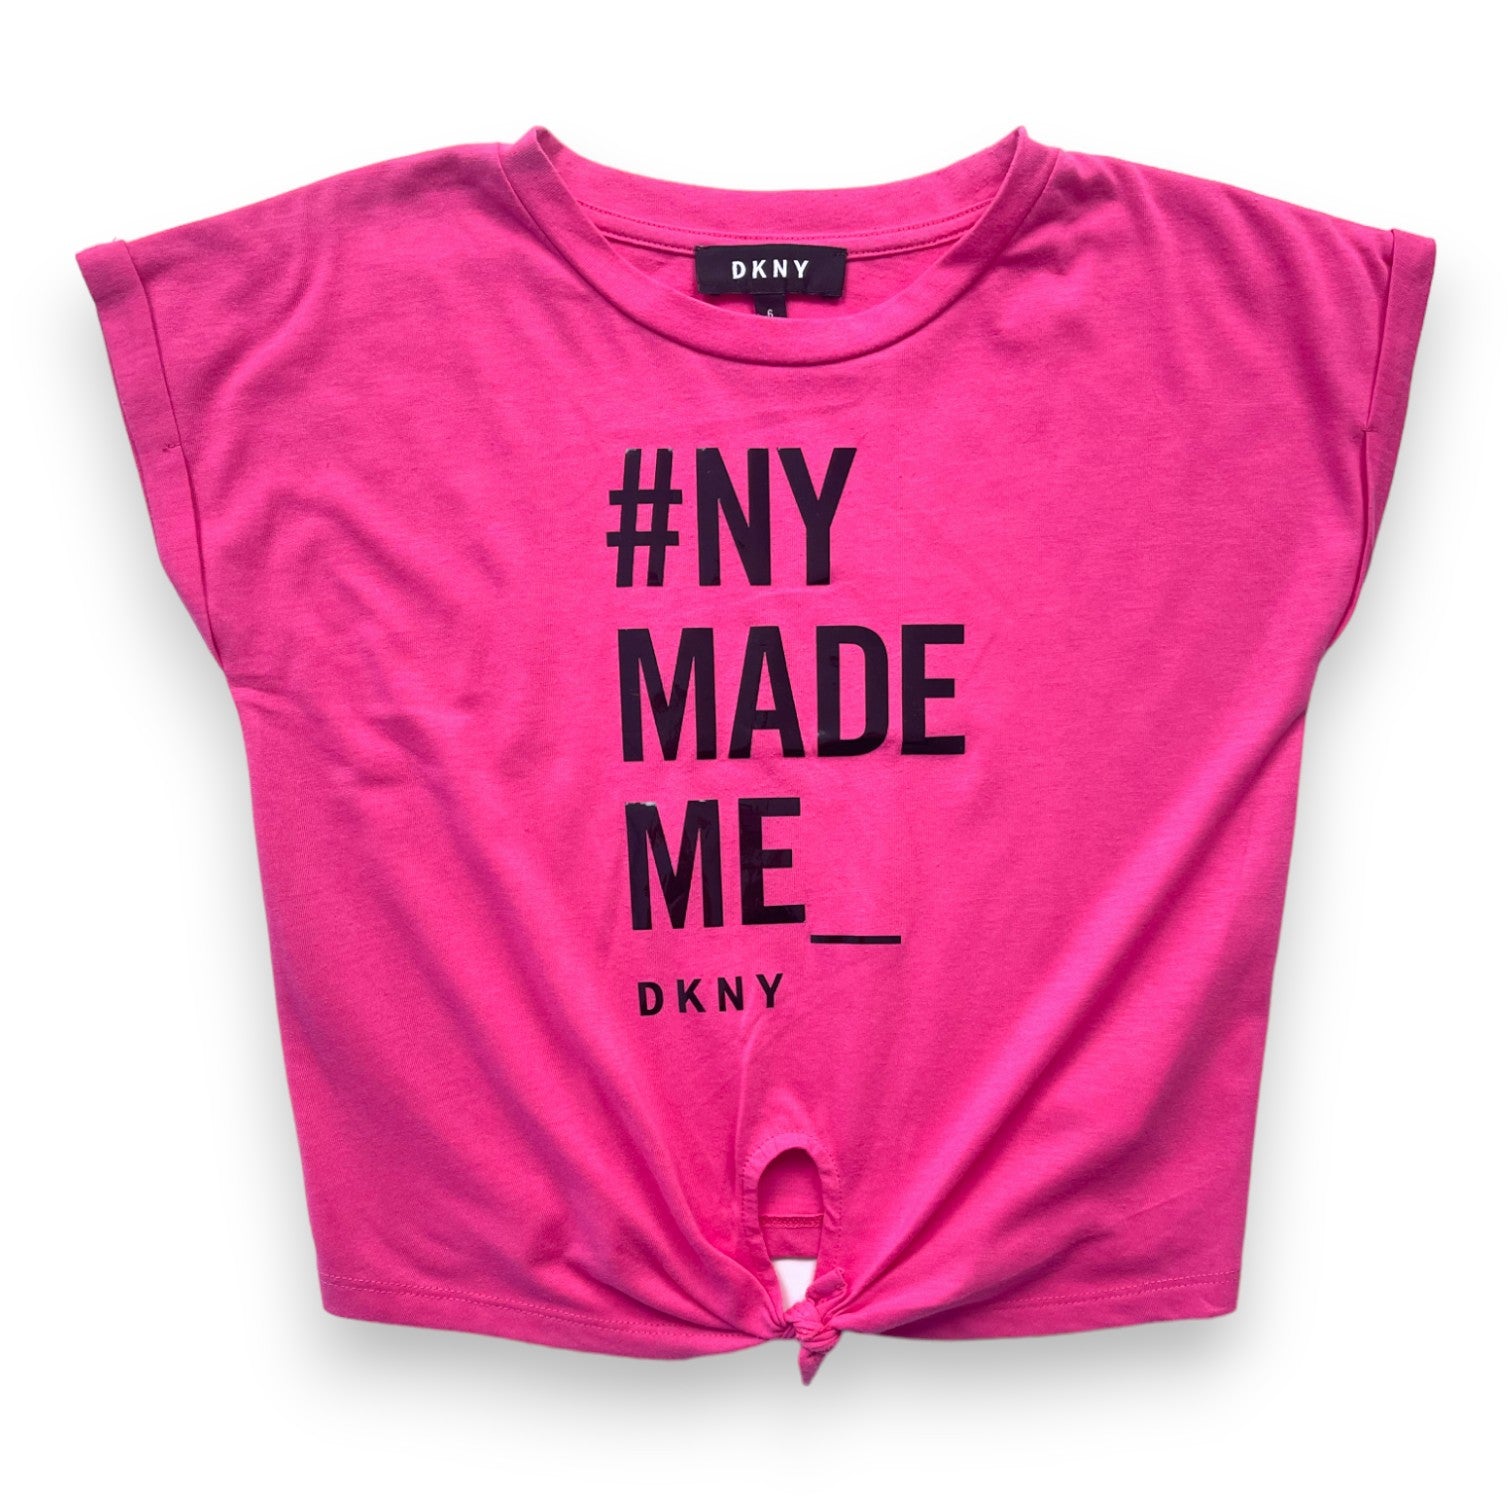 DKNY - T shirt rose "#NY made me" - 6 ans